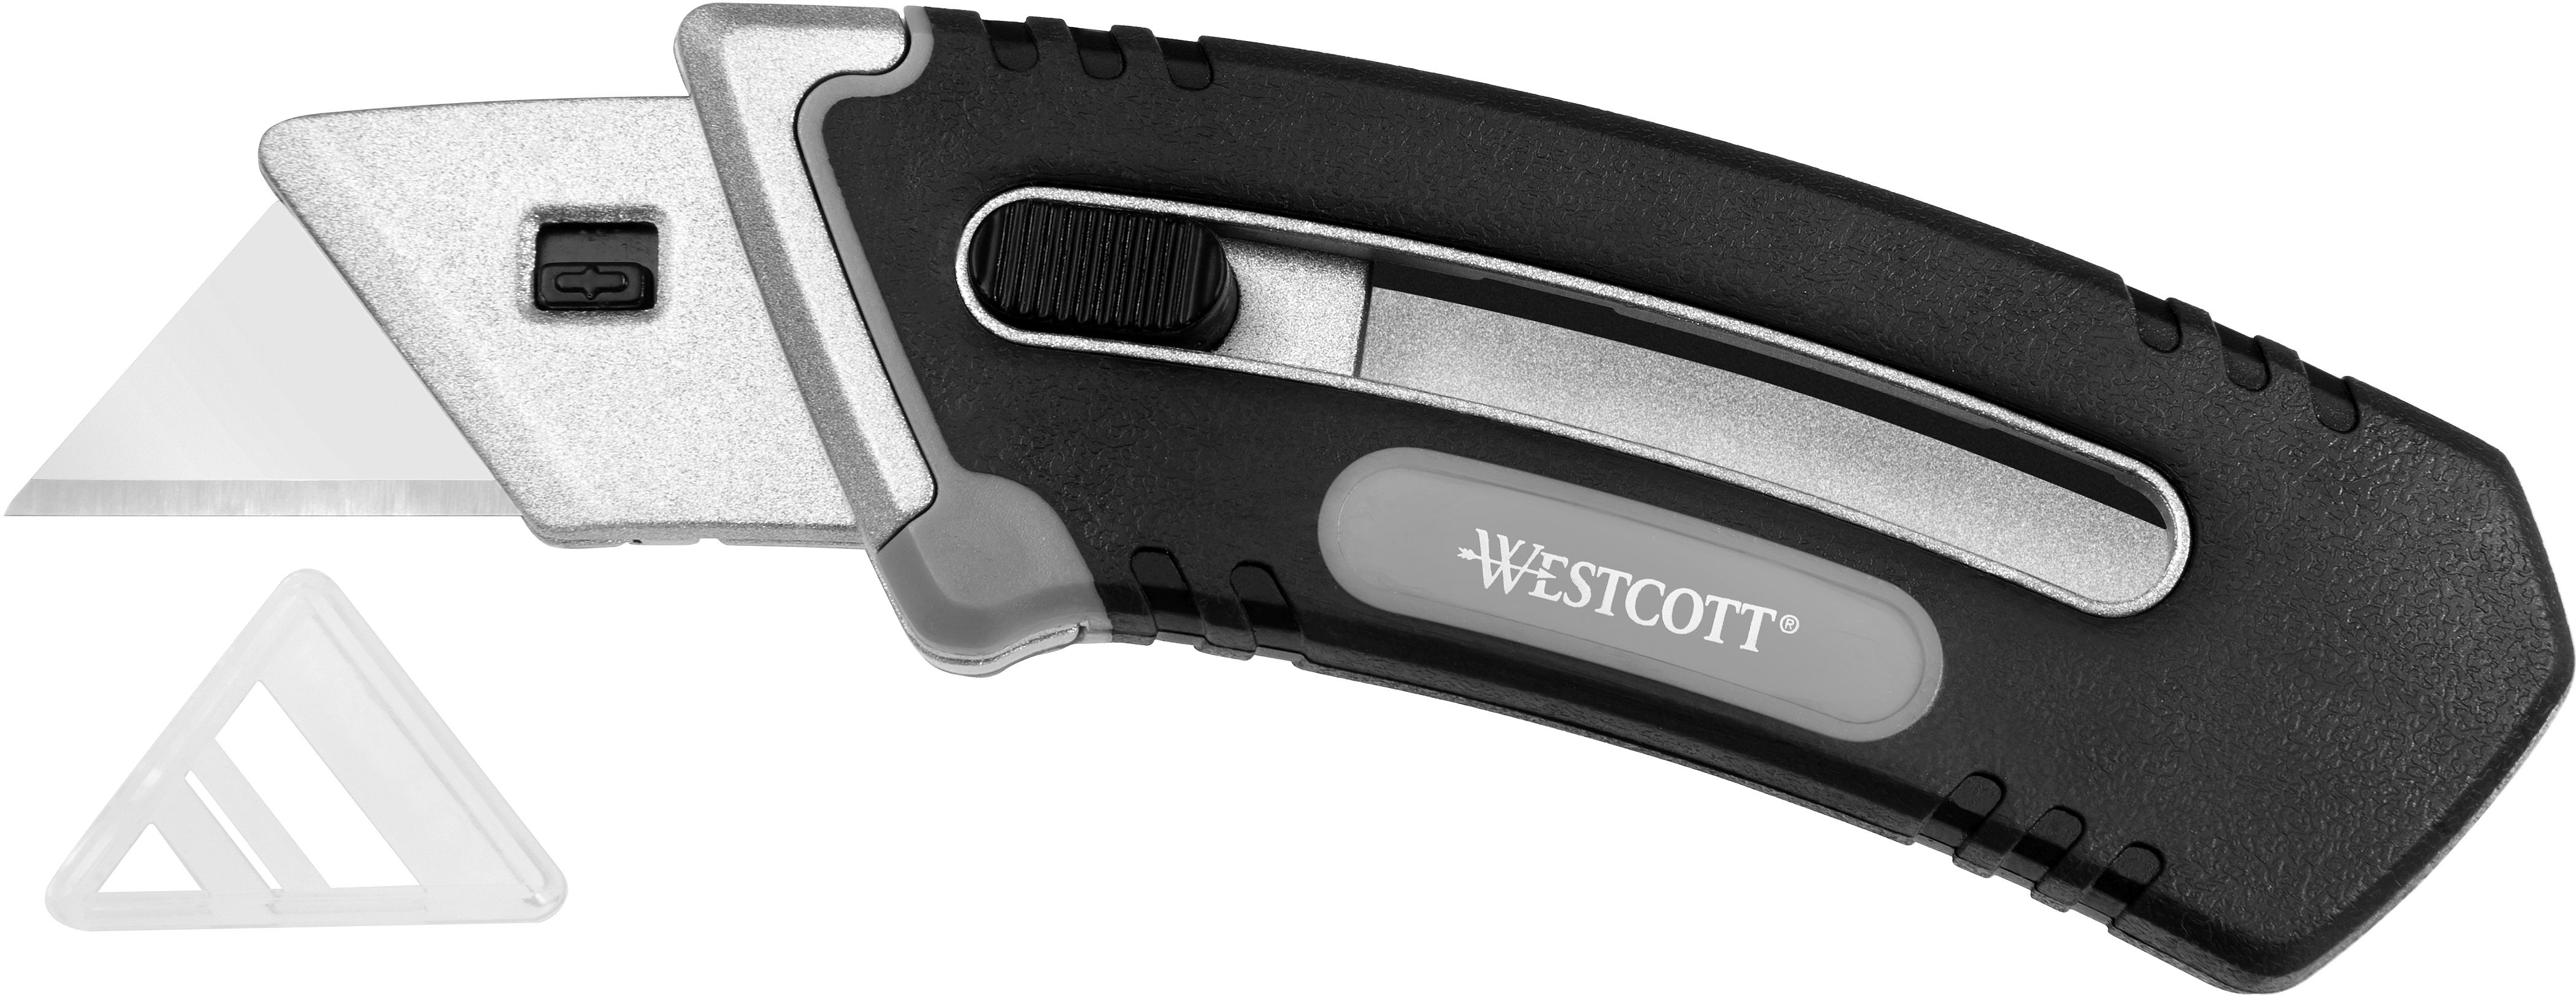 WESTCOTT Cutter Collapsible Utility E-84029 00 noir/argent noir/argent